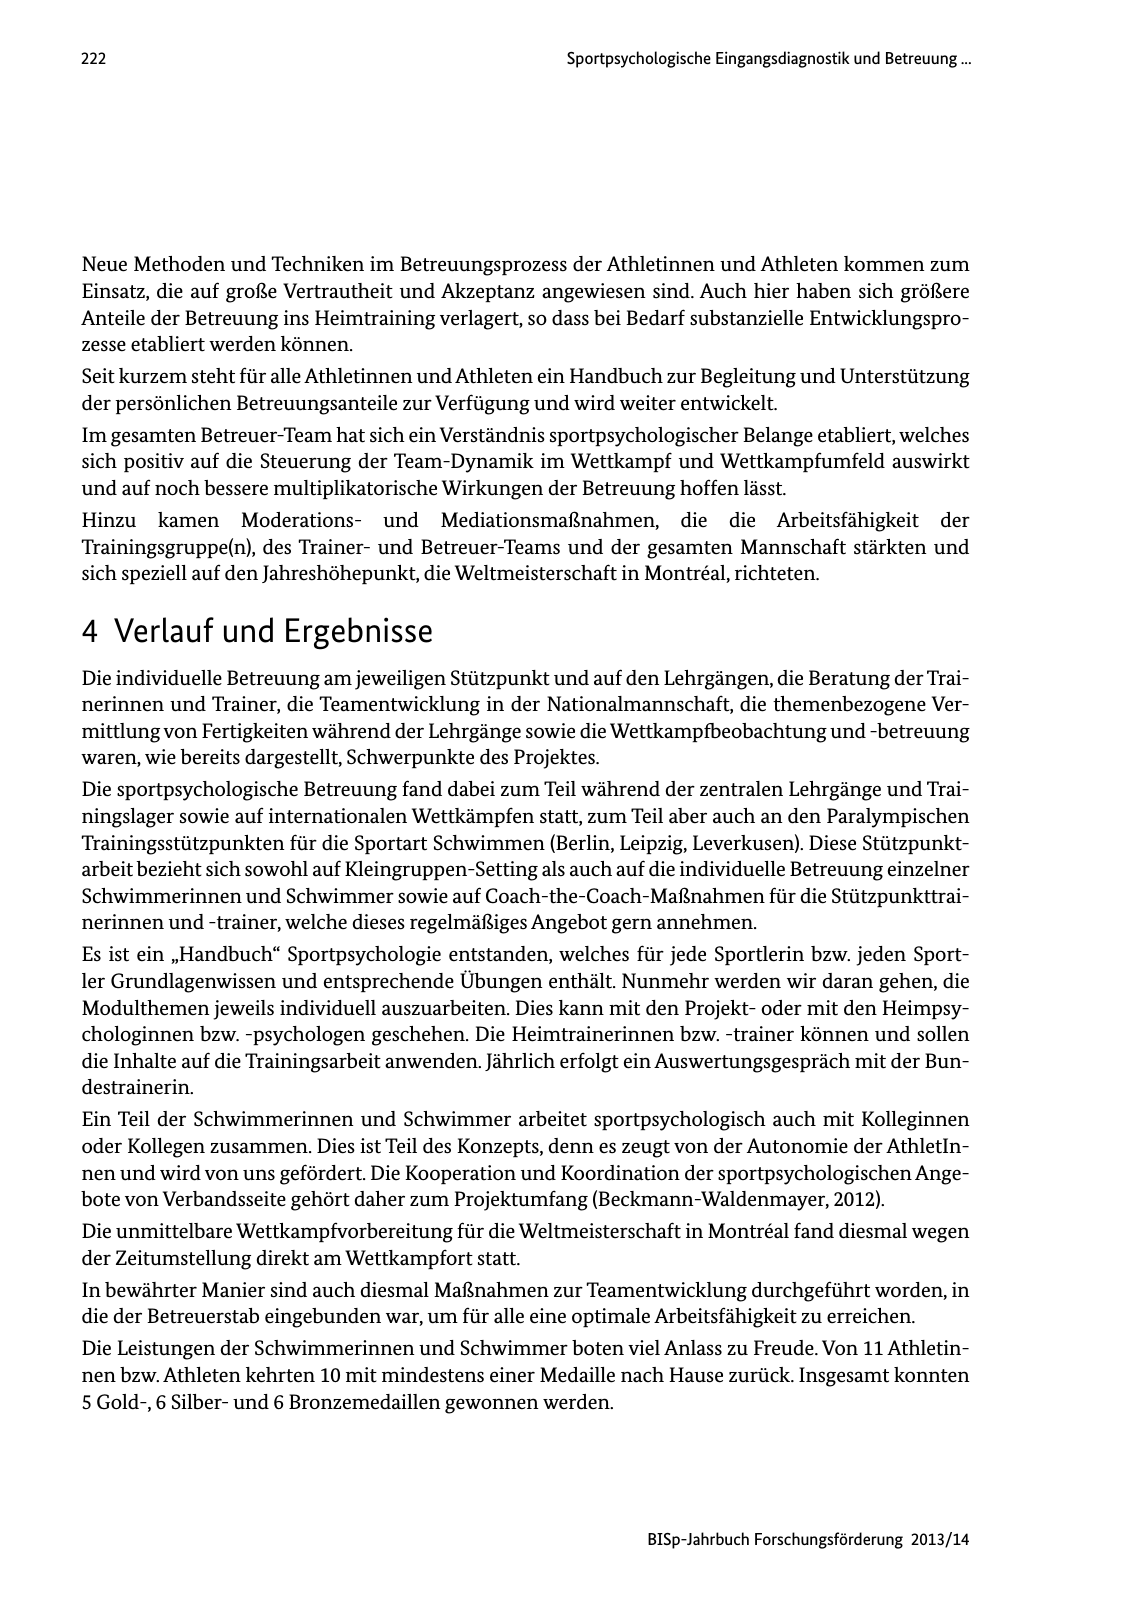 Vorschau BISp-Jahrbuch Forschungsförderung 2013/14 Seite 223